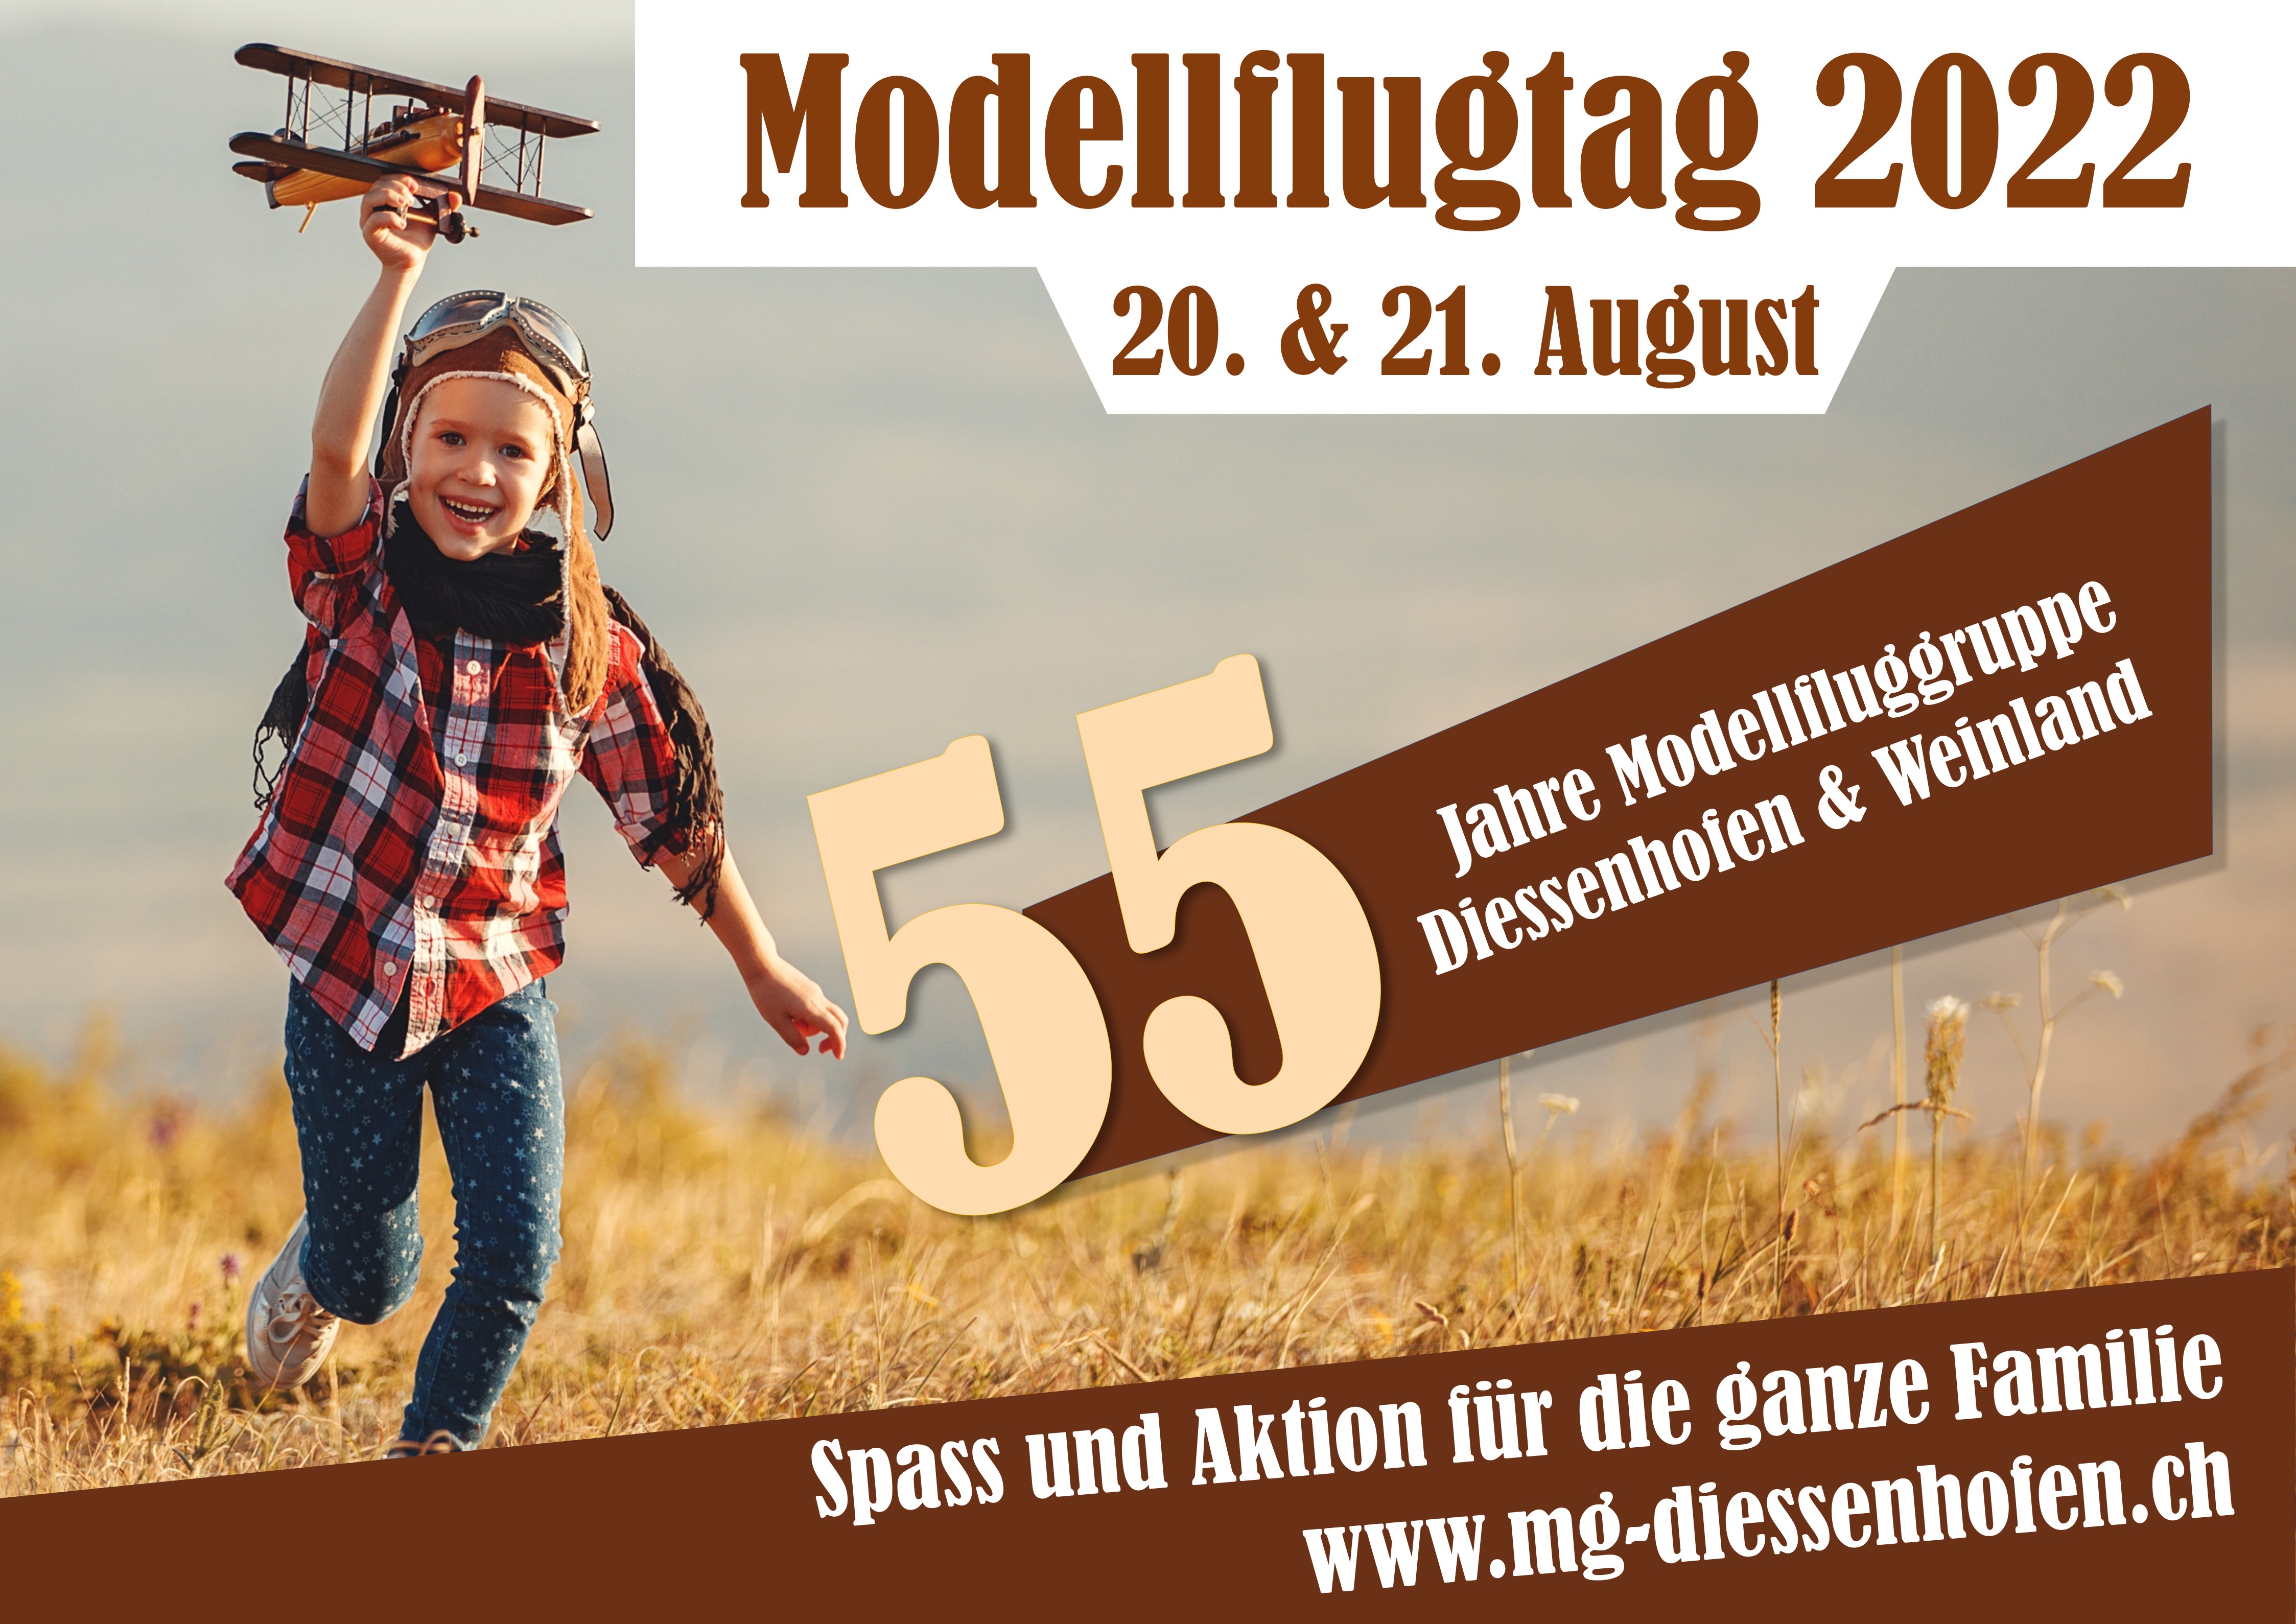 Modellflugtag 2022 - 55 Jahre MG Diessenhofen & Weinland